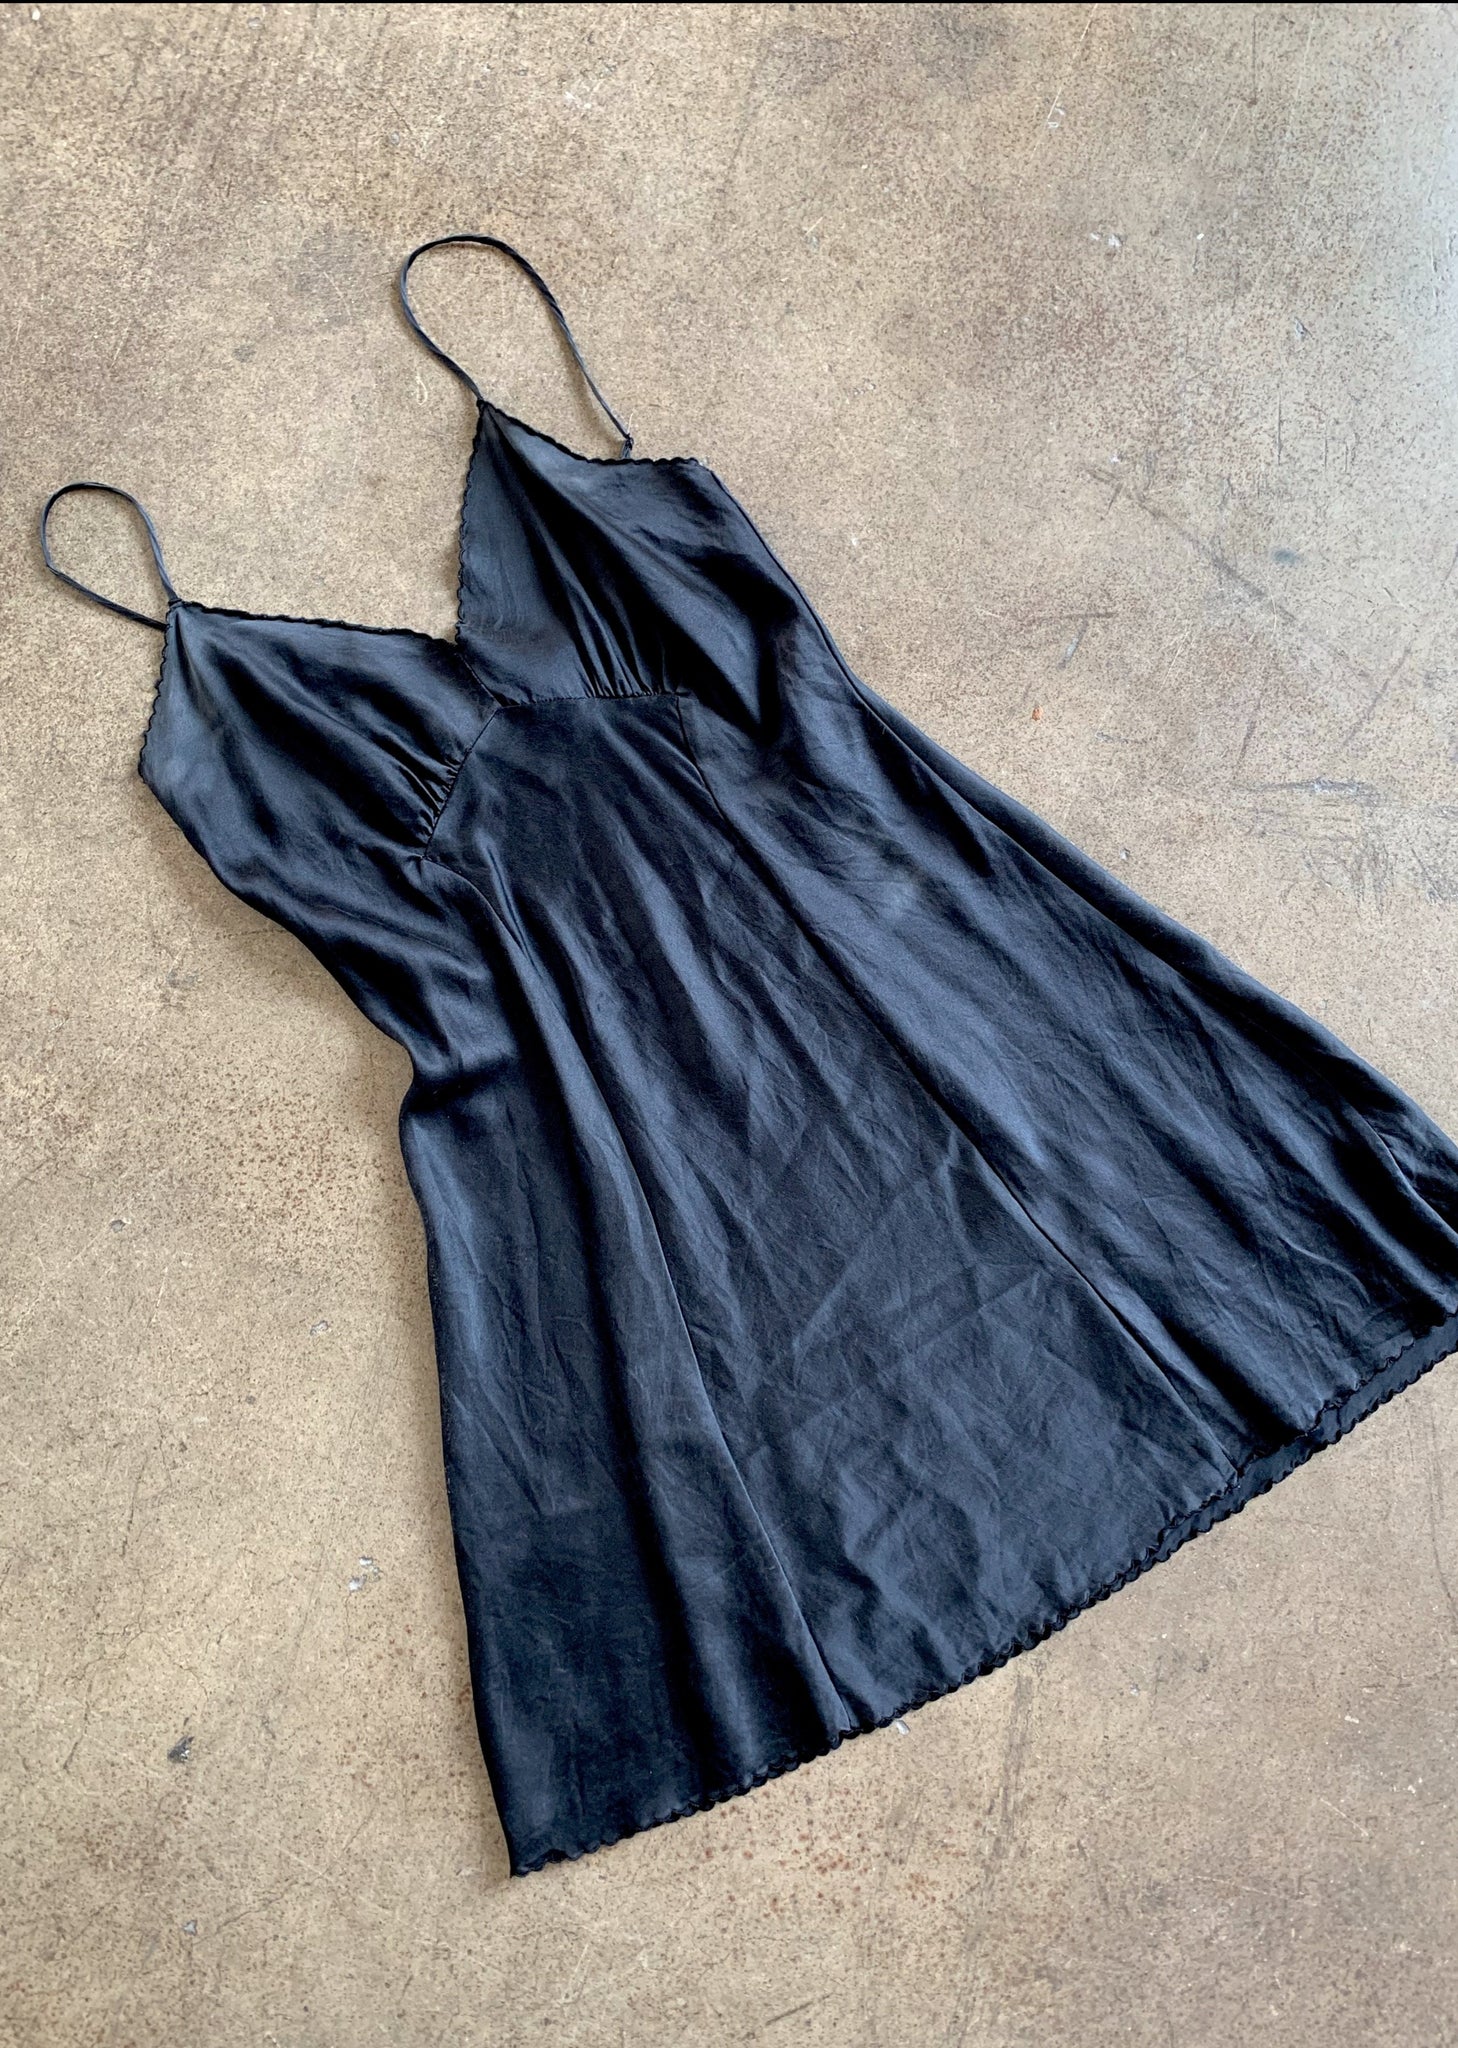 1950s Black Satin Short Slip Dress